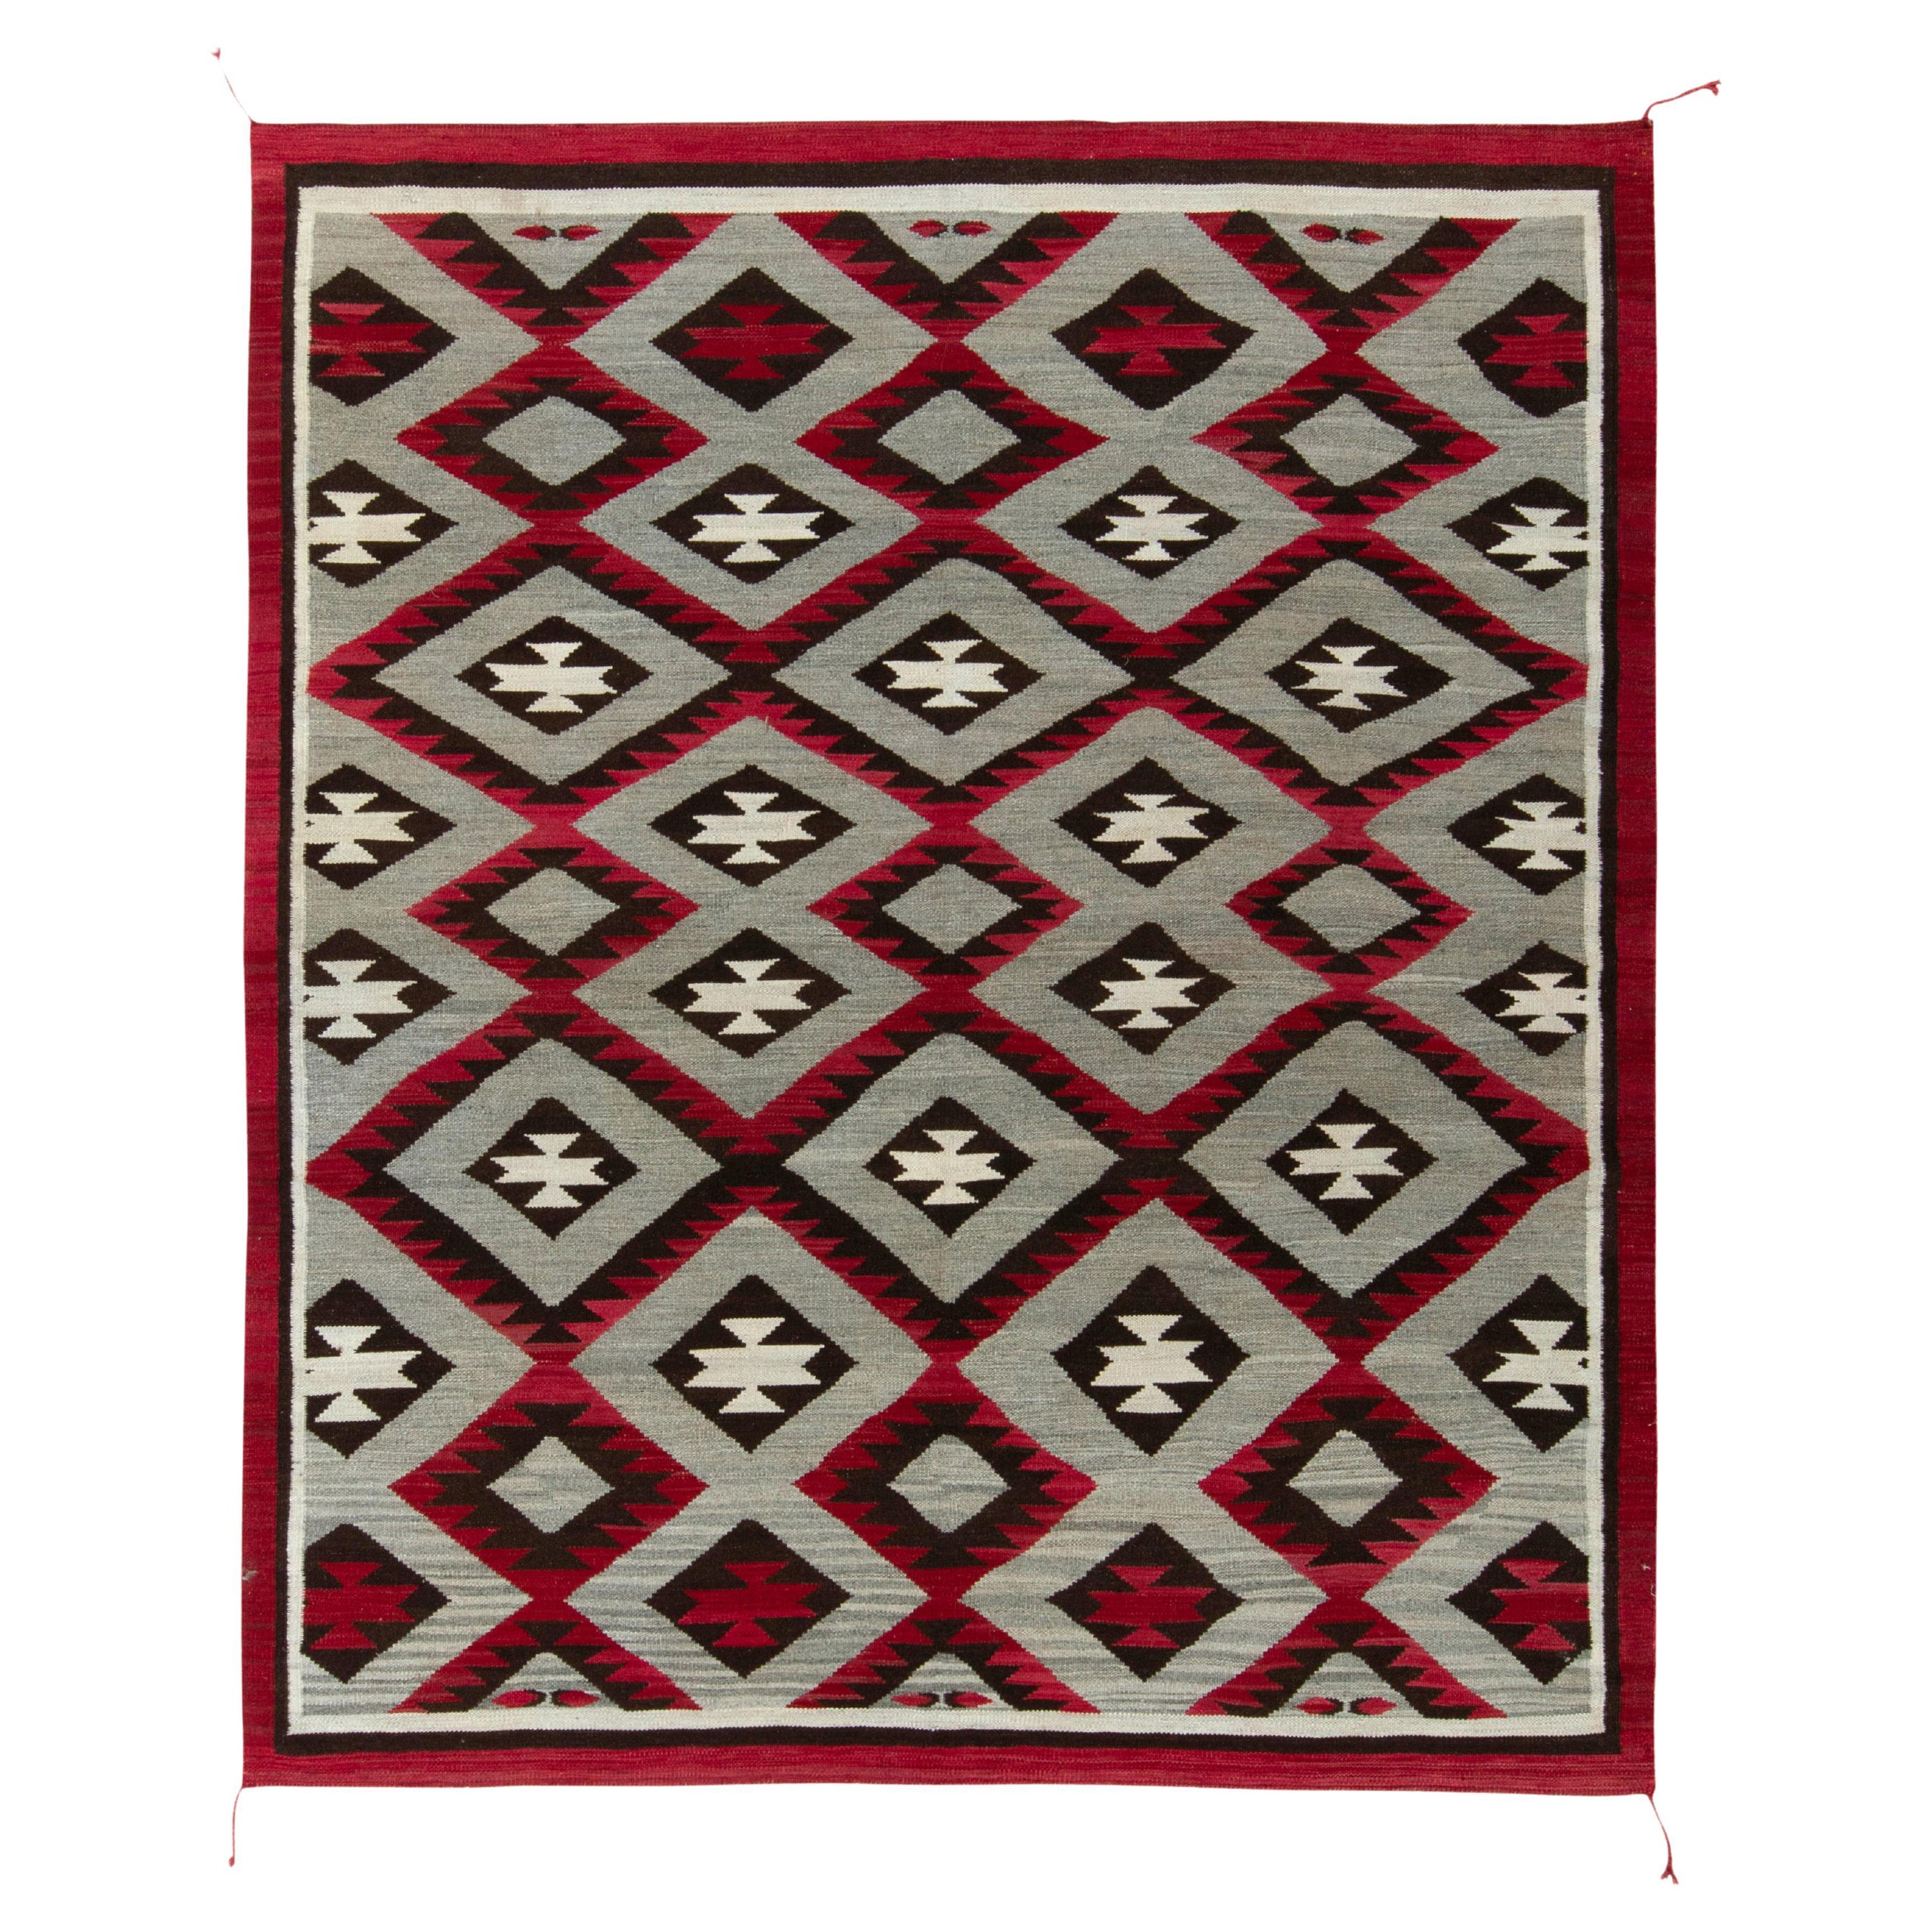 Rug & Kilim's Navajo Kilim Style Rug in Gray, Red and Brown Geometric Pattern (tapis de style Navajo Kilim à motifs géométriques gris, rouges et bruns)